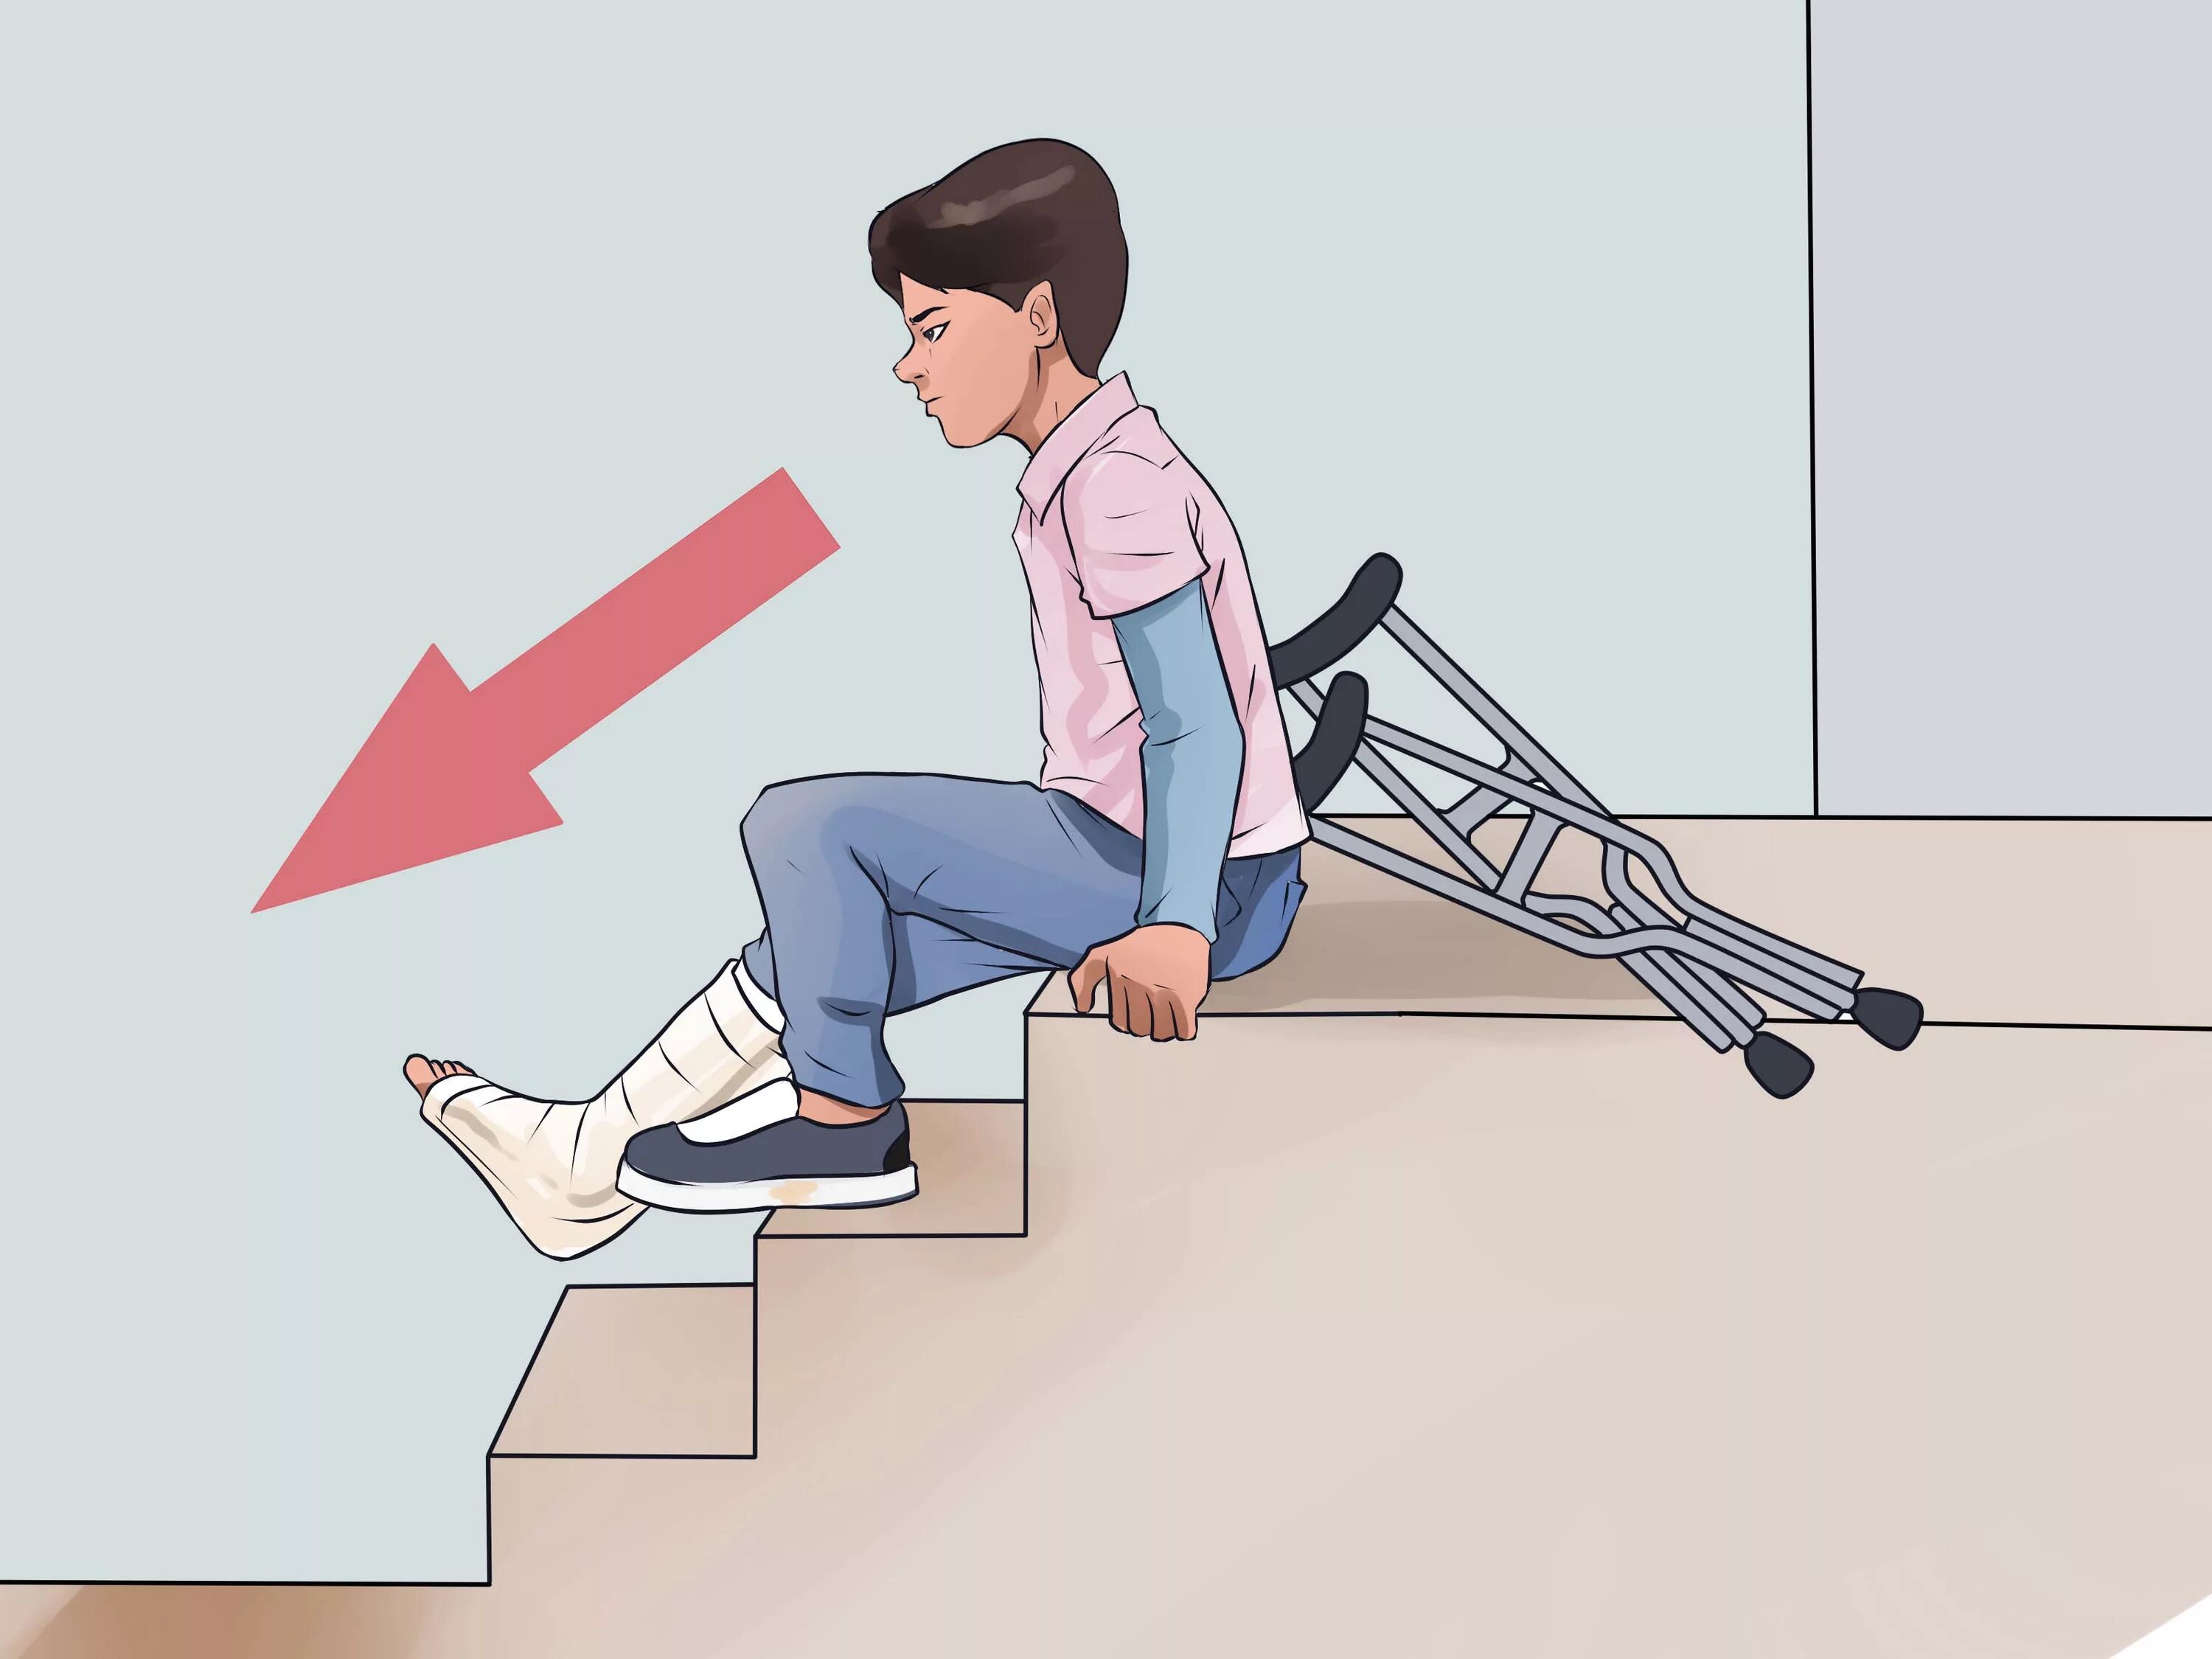 Спуск по лестнице на костылях. Техника хождения на костылях по ступенькам. Ходьба на костылях по лестнице. Упасть на правую ногу